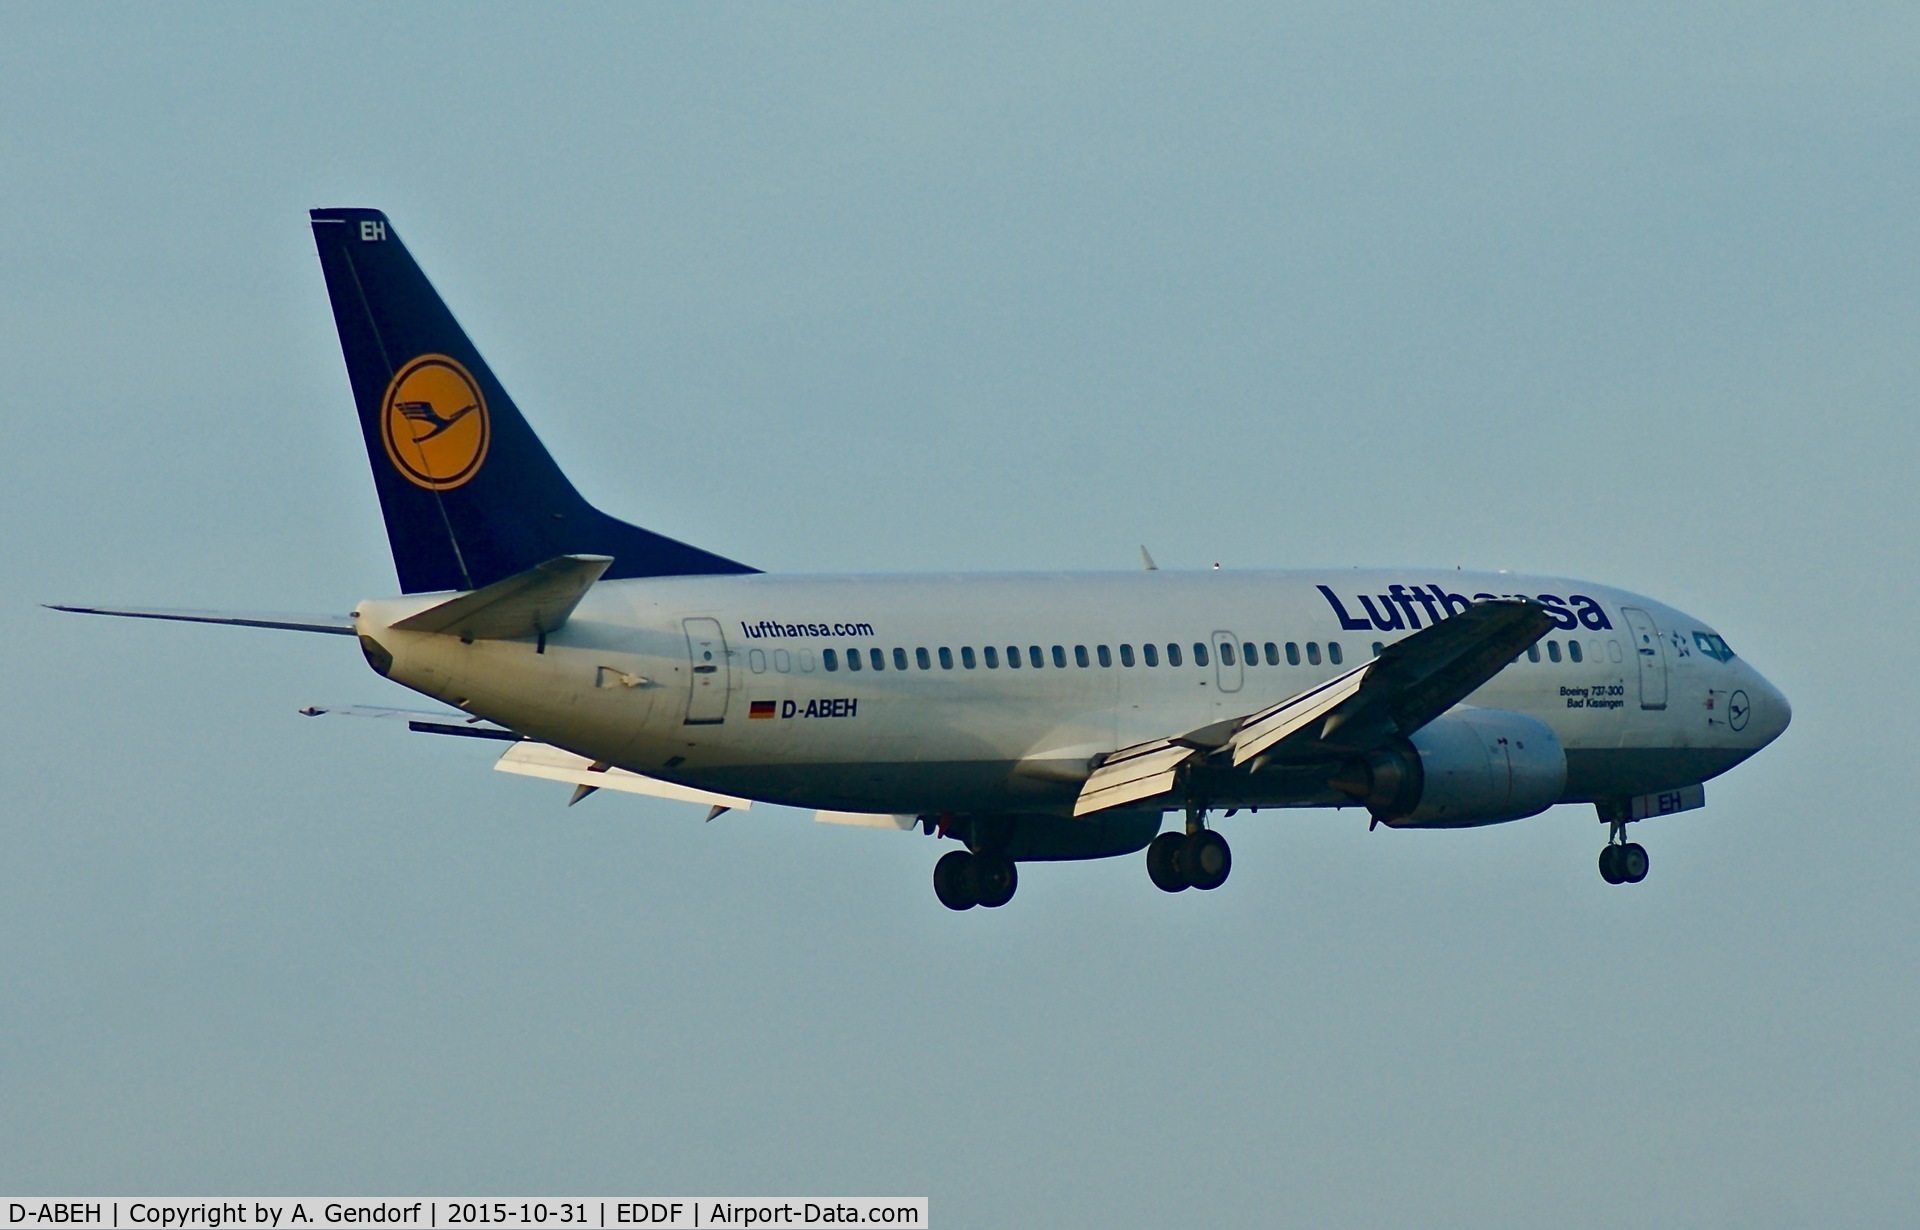 D-ABEH, 1991 Boeing 737-330 C/N 25242, Lufthansa, is here landing at Frankfurt Rhein/Main(EDDF)